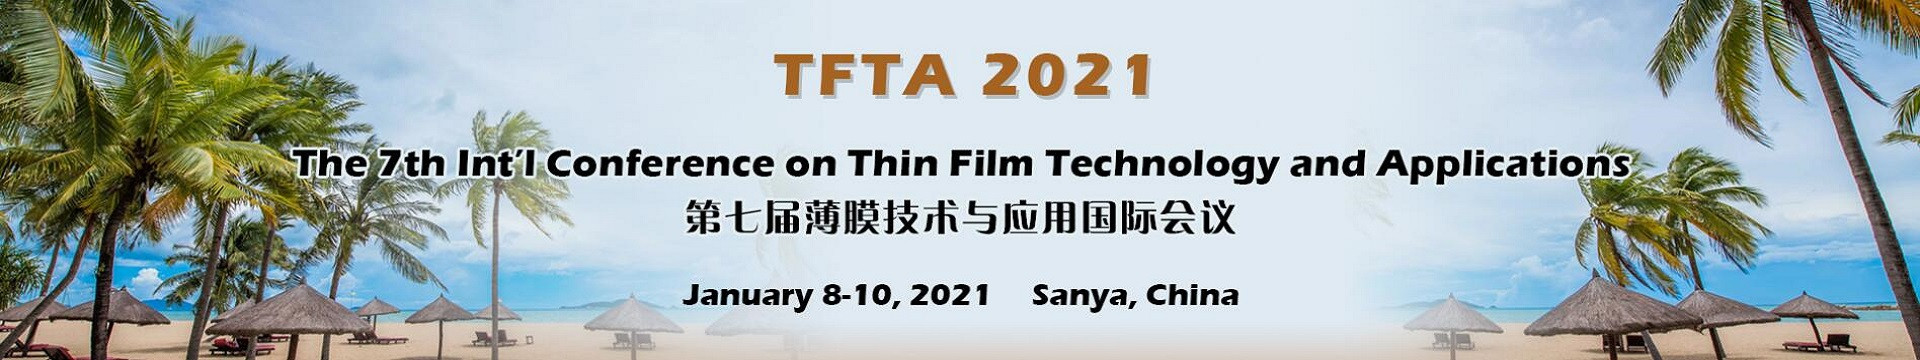 第七届薄膜技术与应用国际会议(TFTA 2021)